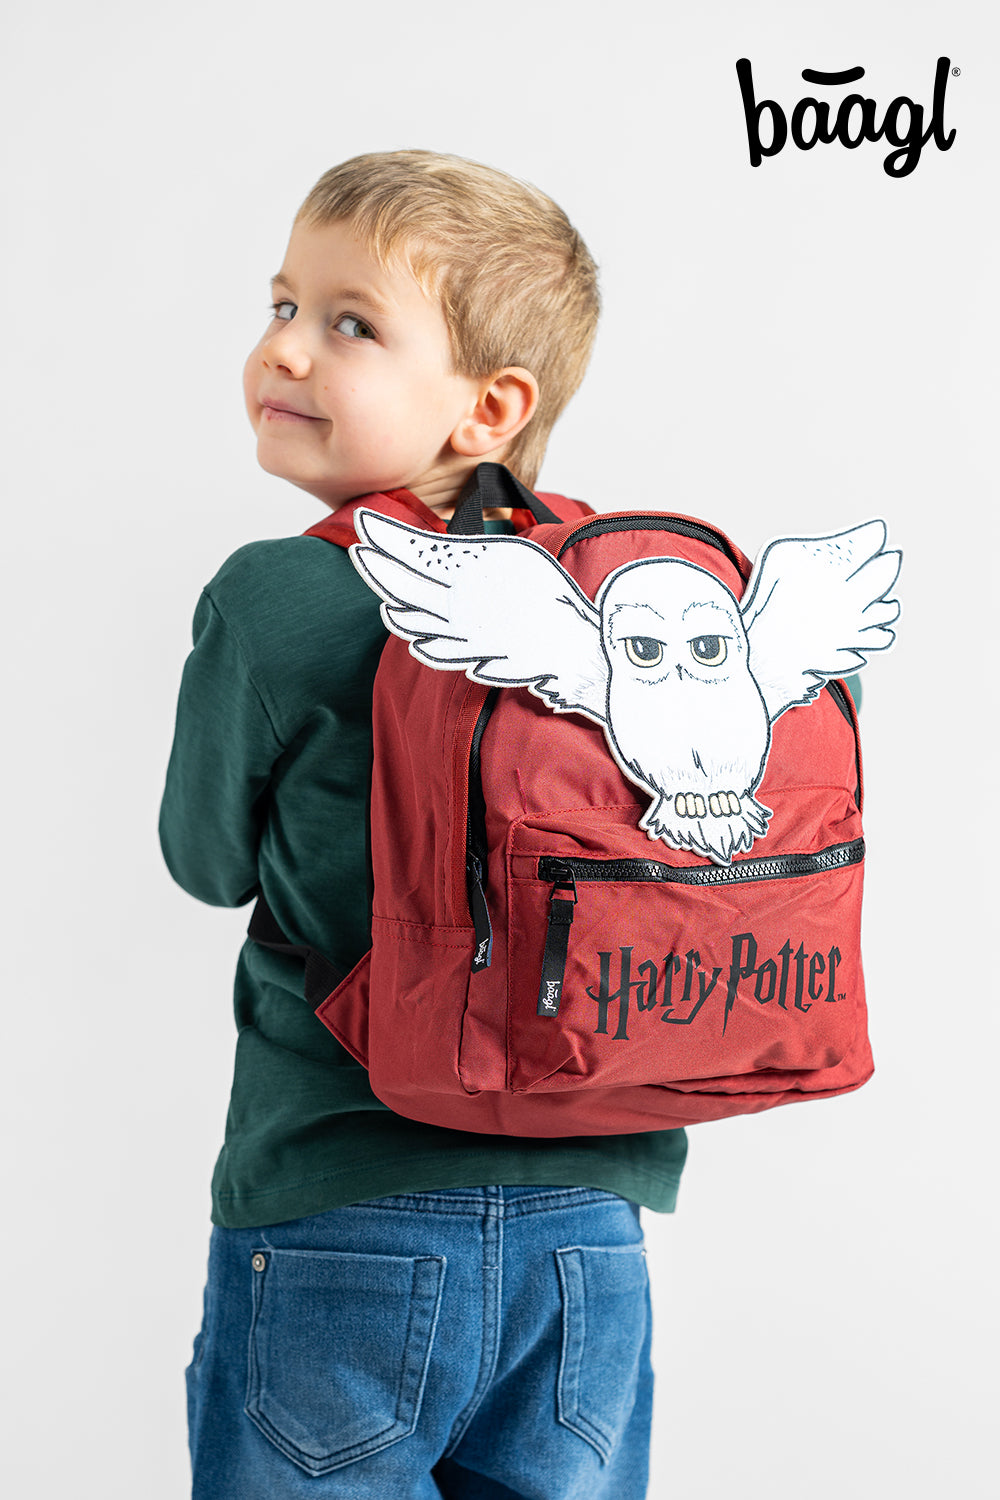 Předškolní batoh Harry Potter Hedvika